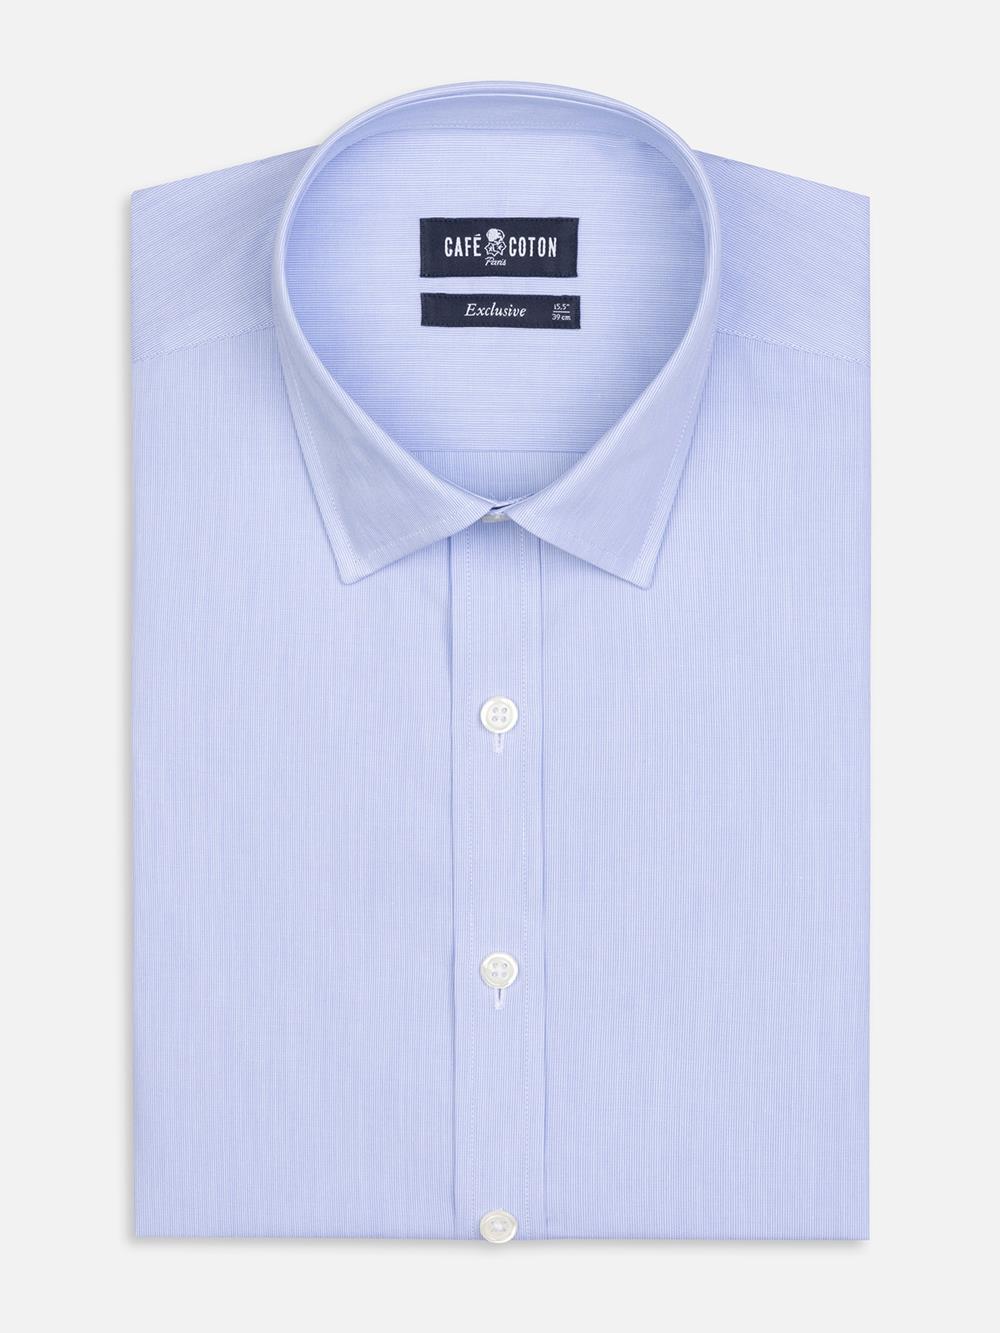 Tailliertes Hemd mit tausend Streifen himmelblau - Kleiner Kragen